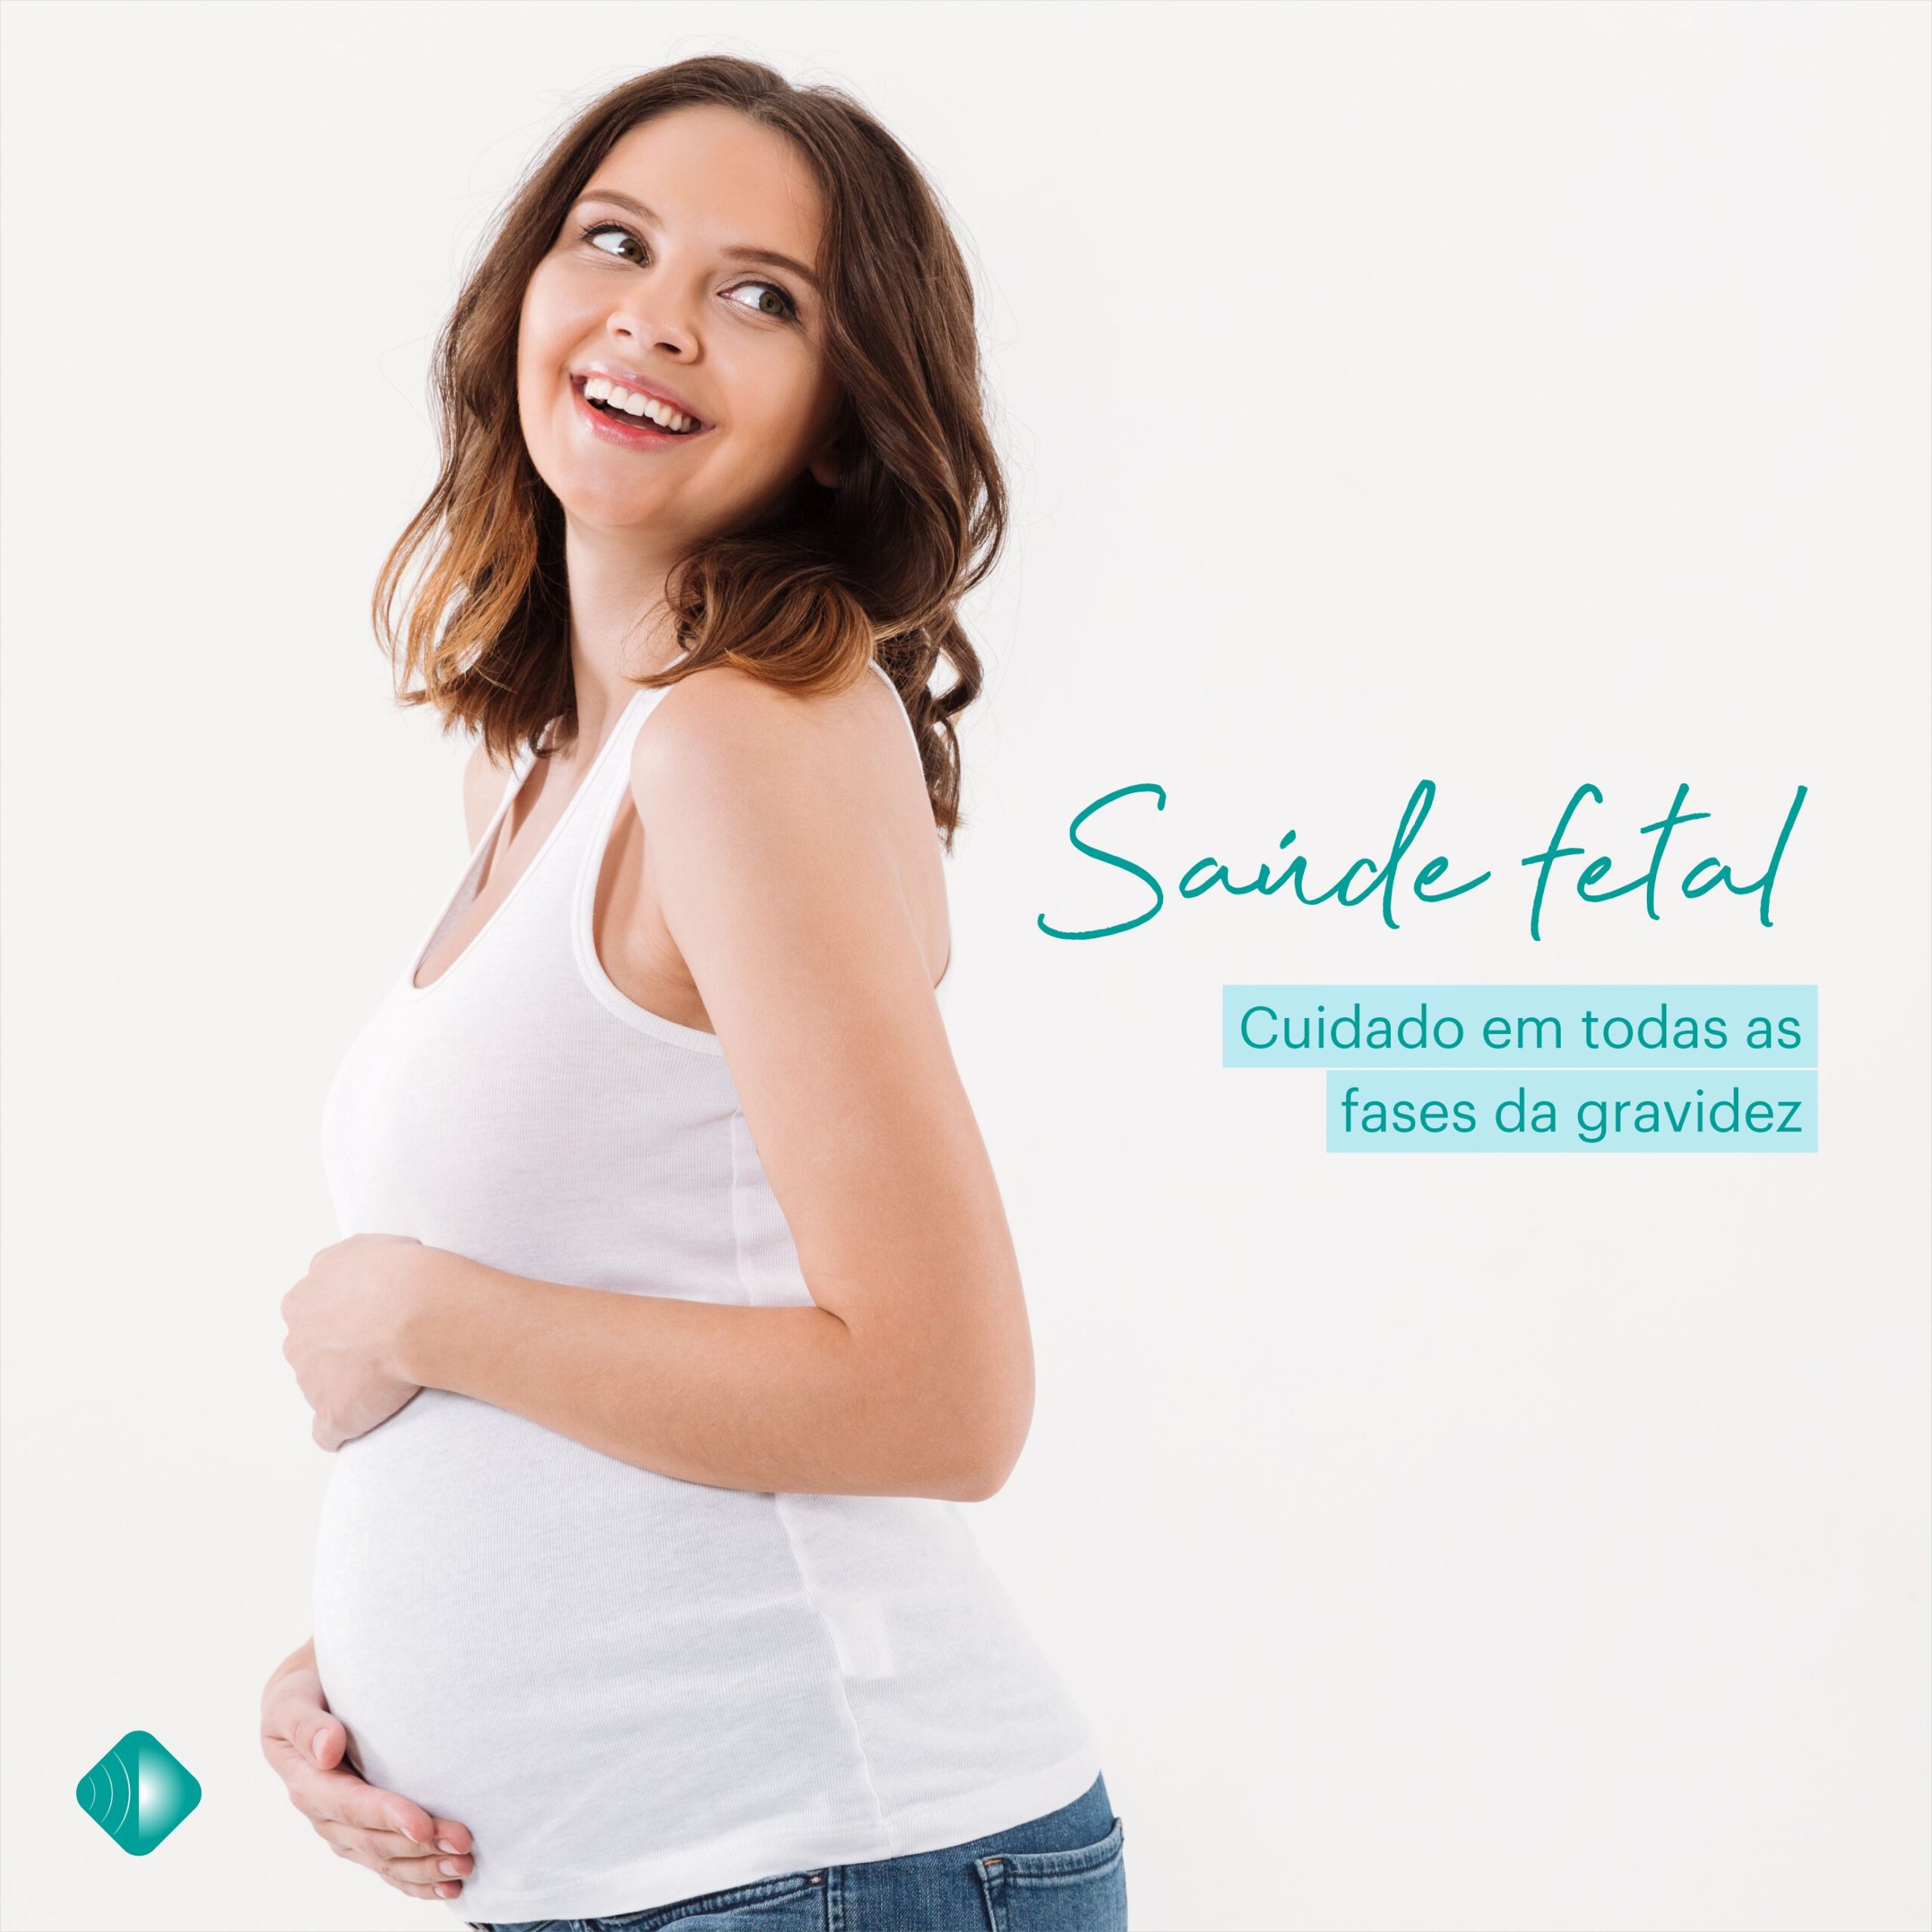 Saúde Fetal: Cuidado em todas as fases da gravidez